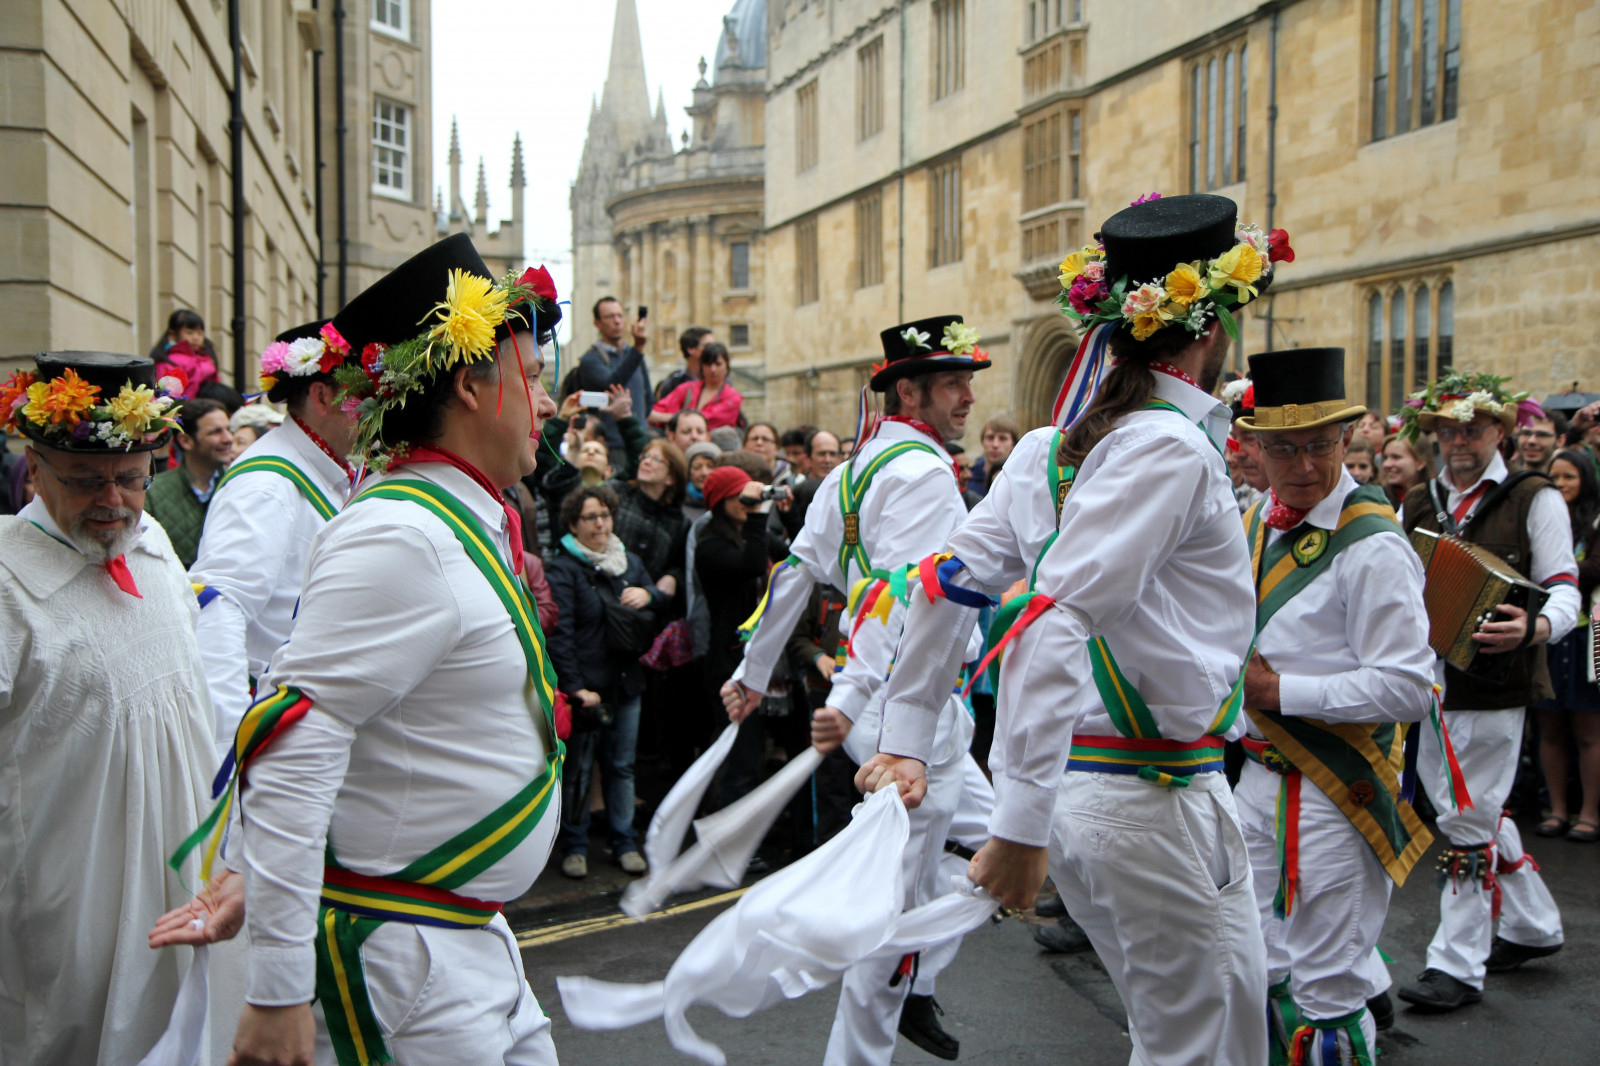 3 pav. Morris šokis Gegužės 1-ąją Oksforde. Fot. R. Račiūnaitė-Paužuolienė, 2012 m.